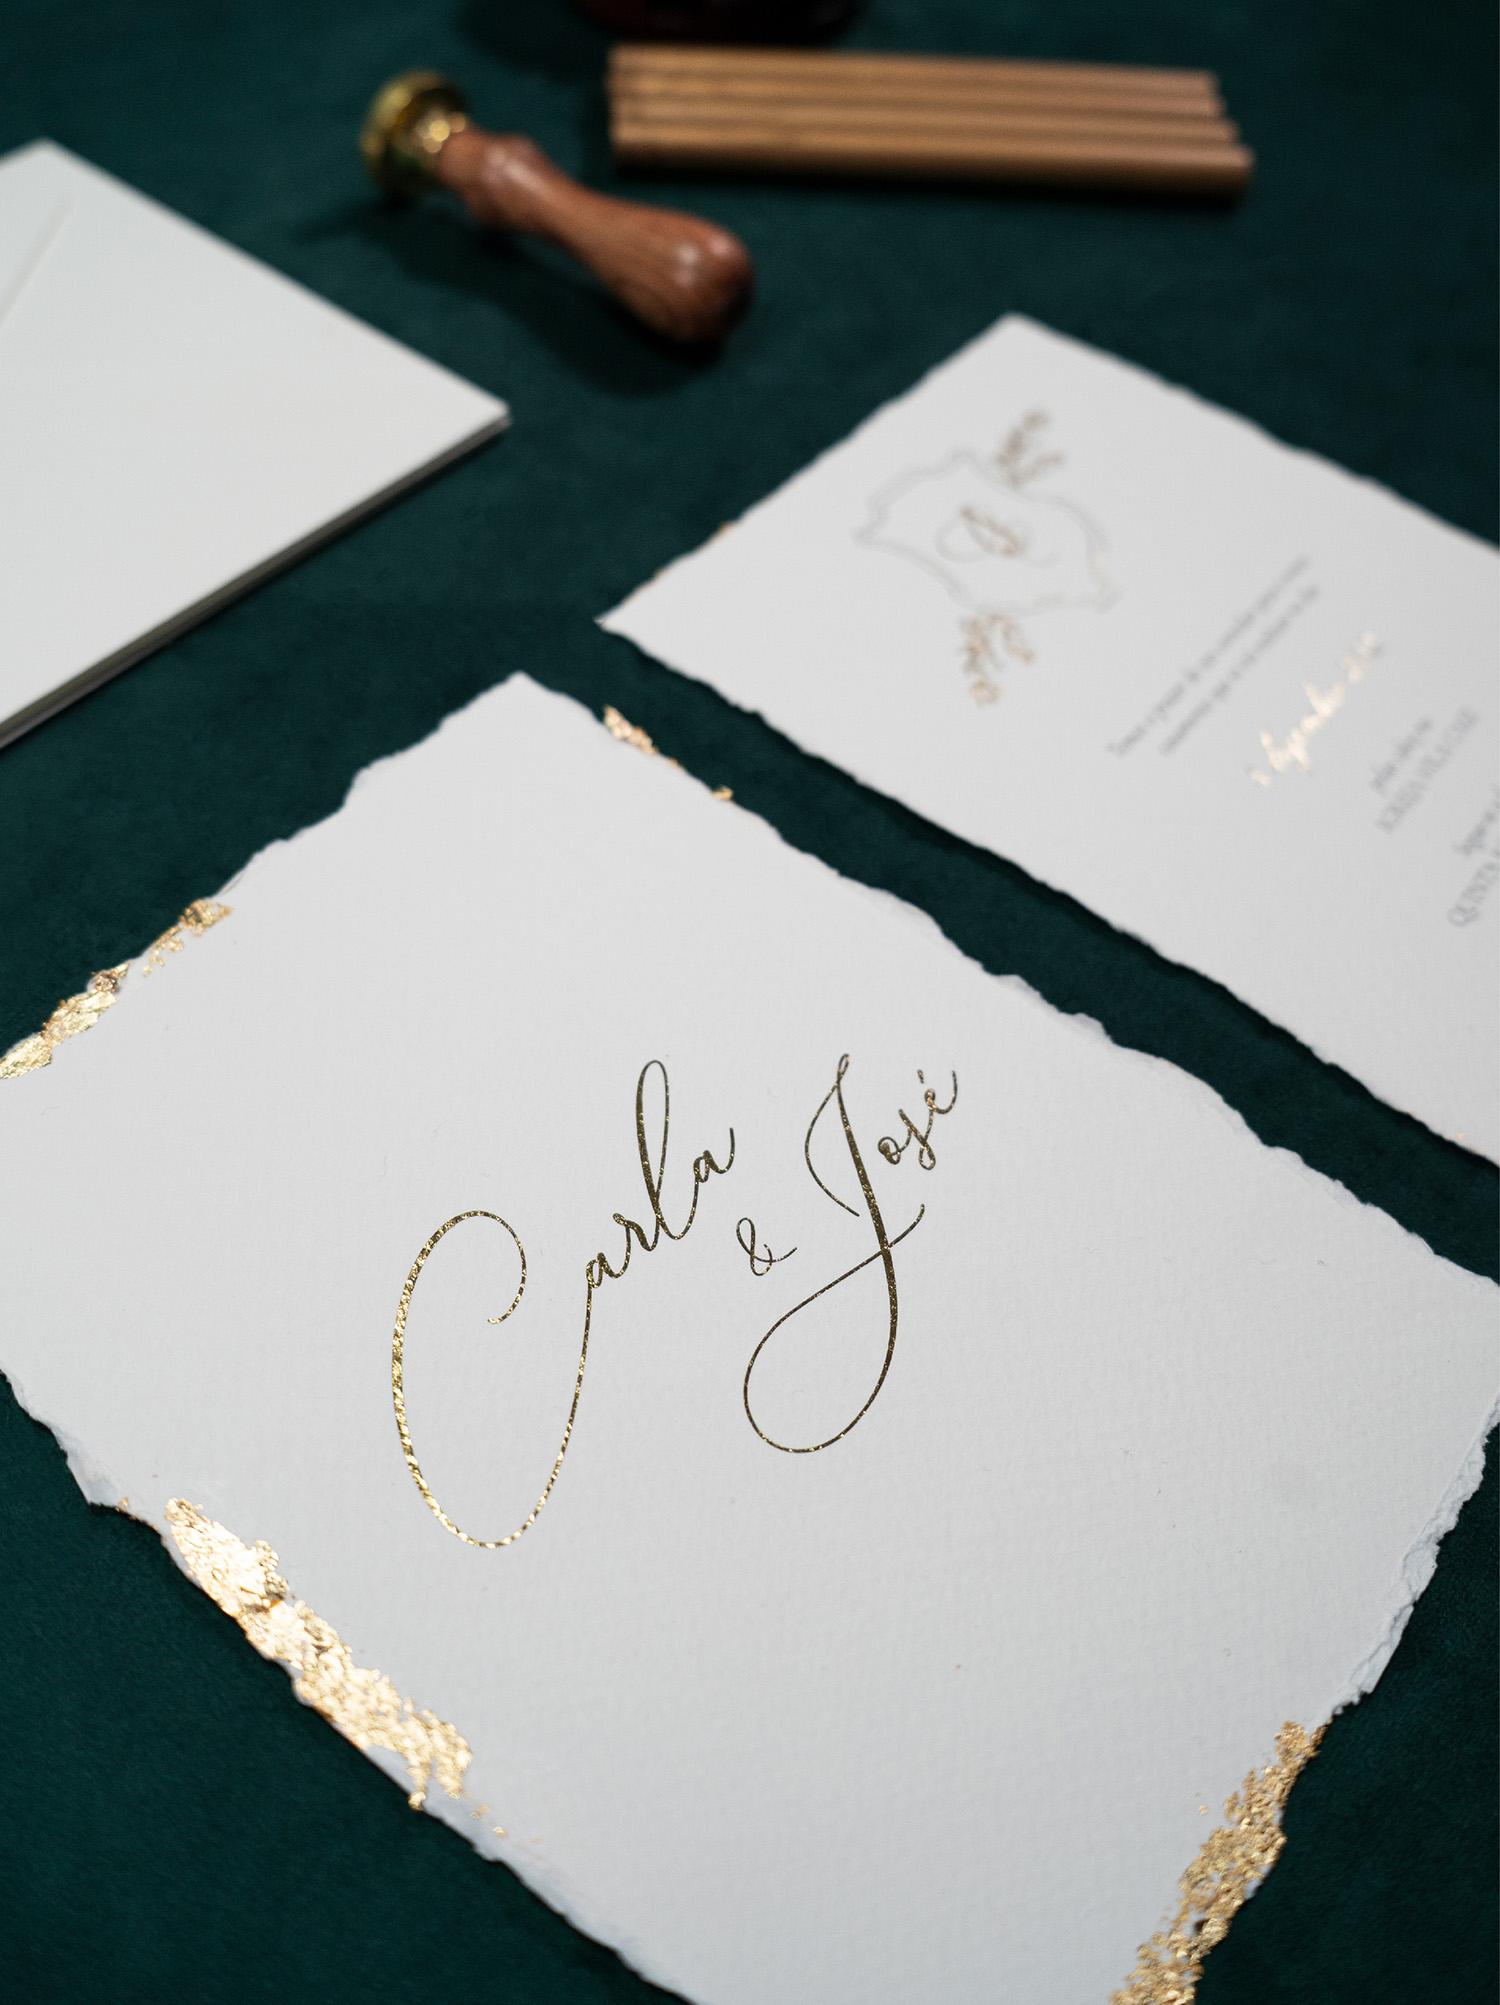 Convite de casamento em papel com efeito rasgado e detalhes dourado